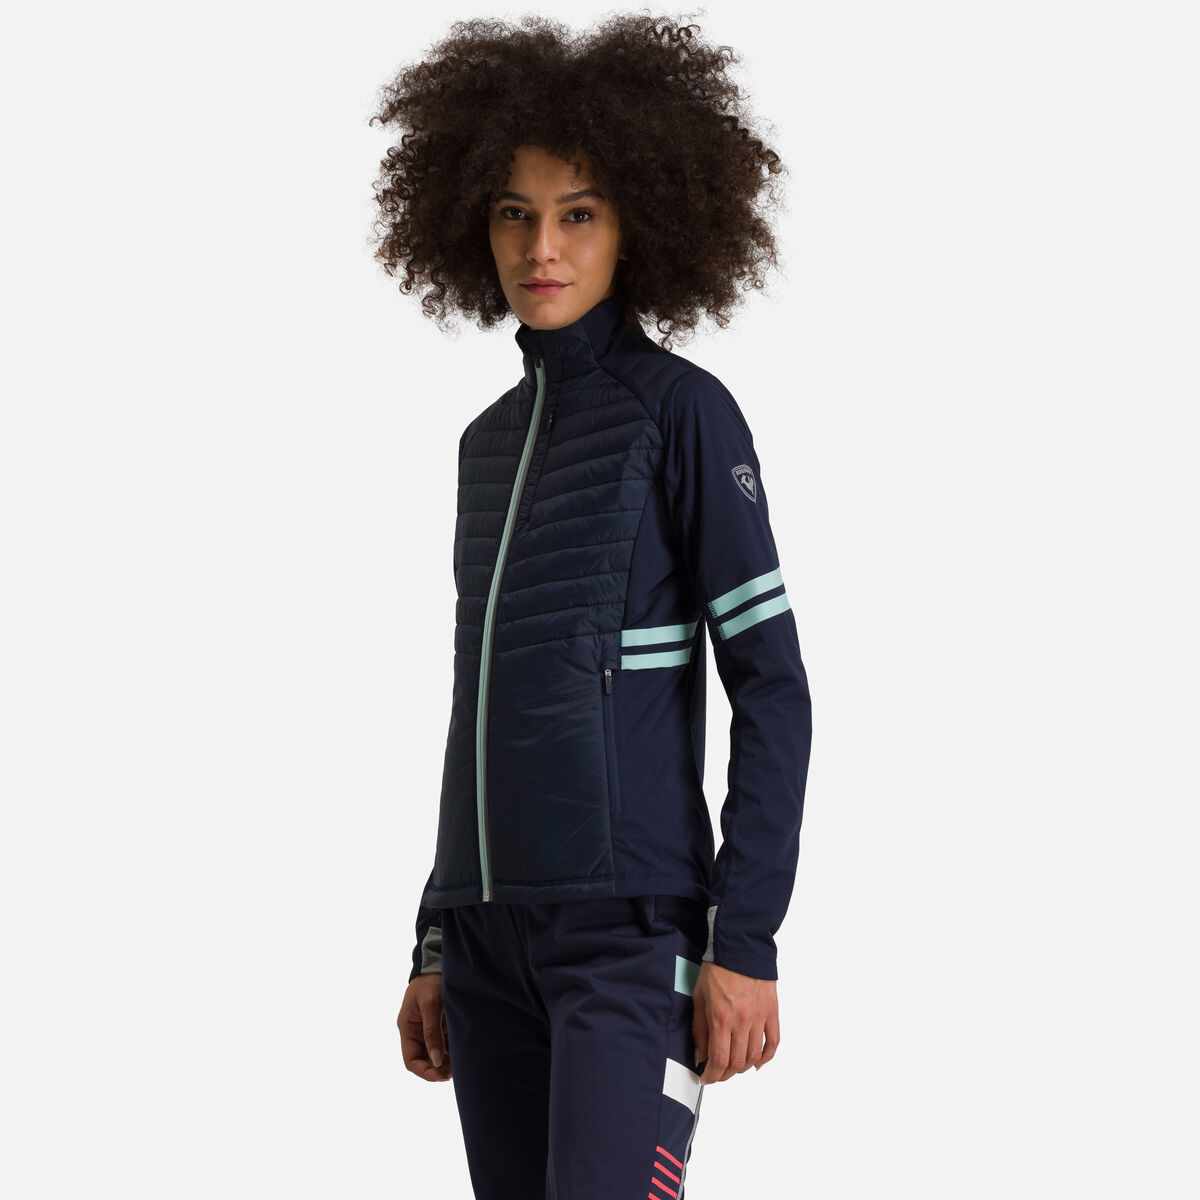 Women's Poursuite Warm nordic ski jacket